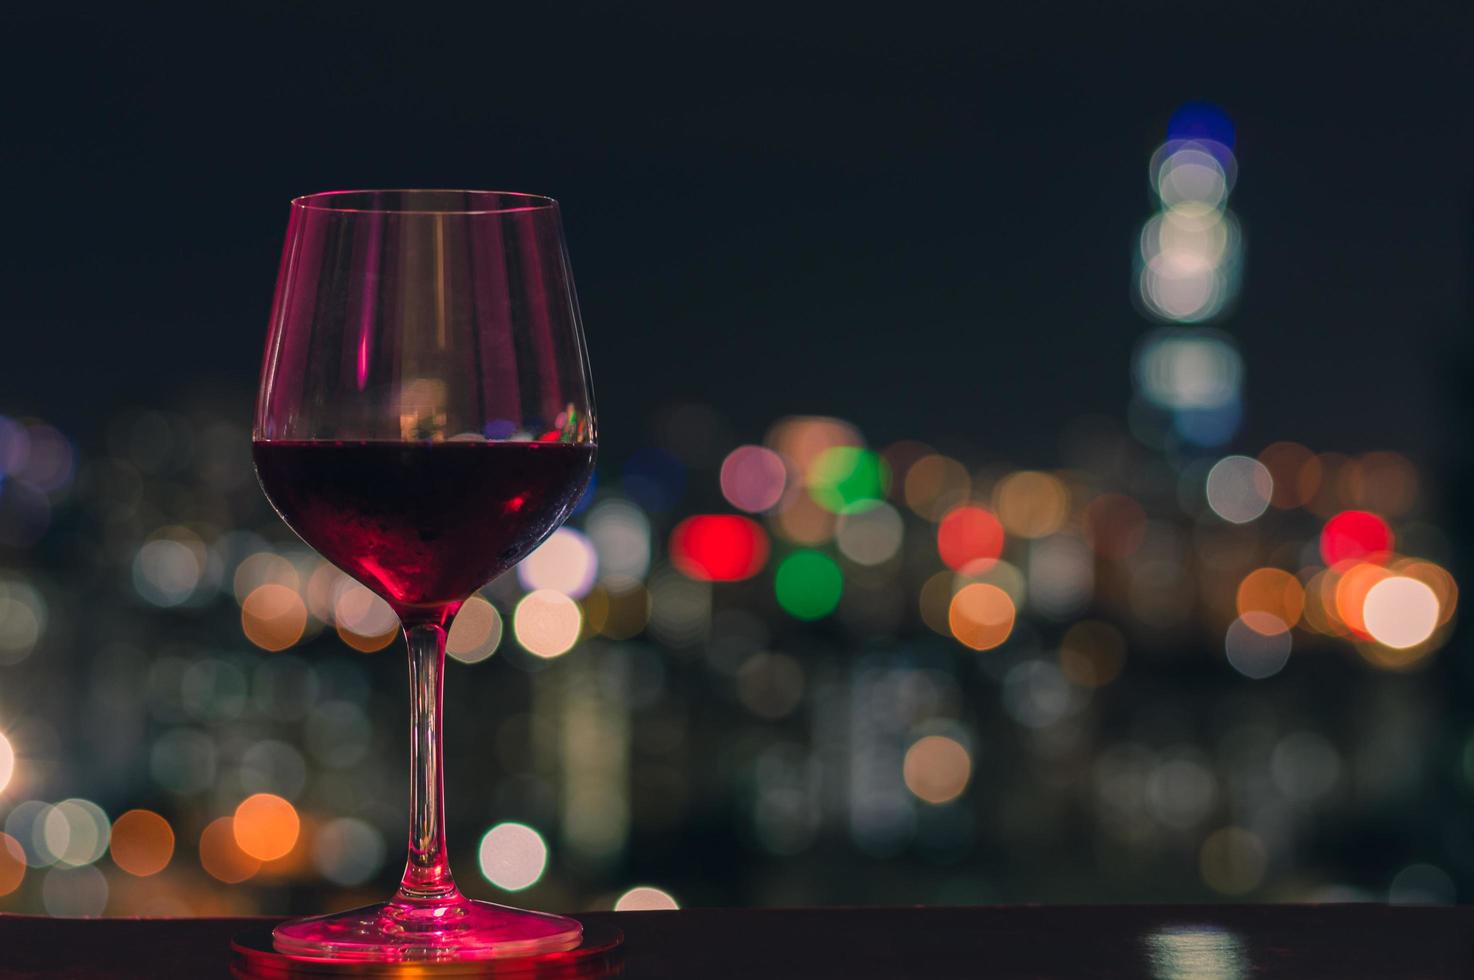 färgglada ljus lyser på ett glas rött vin foto